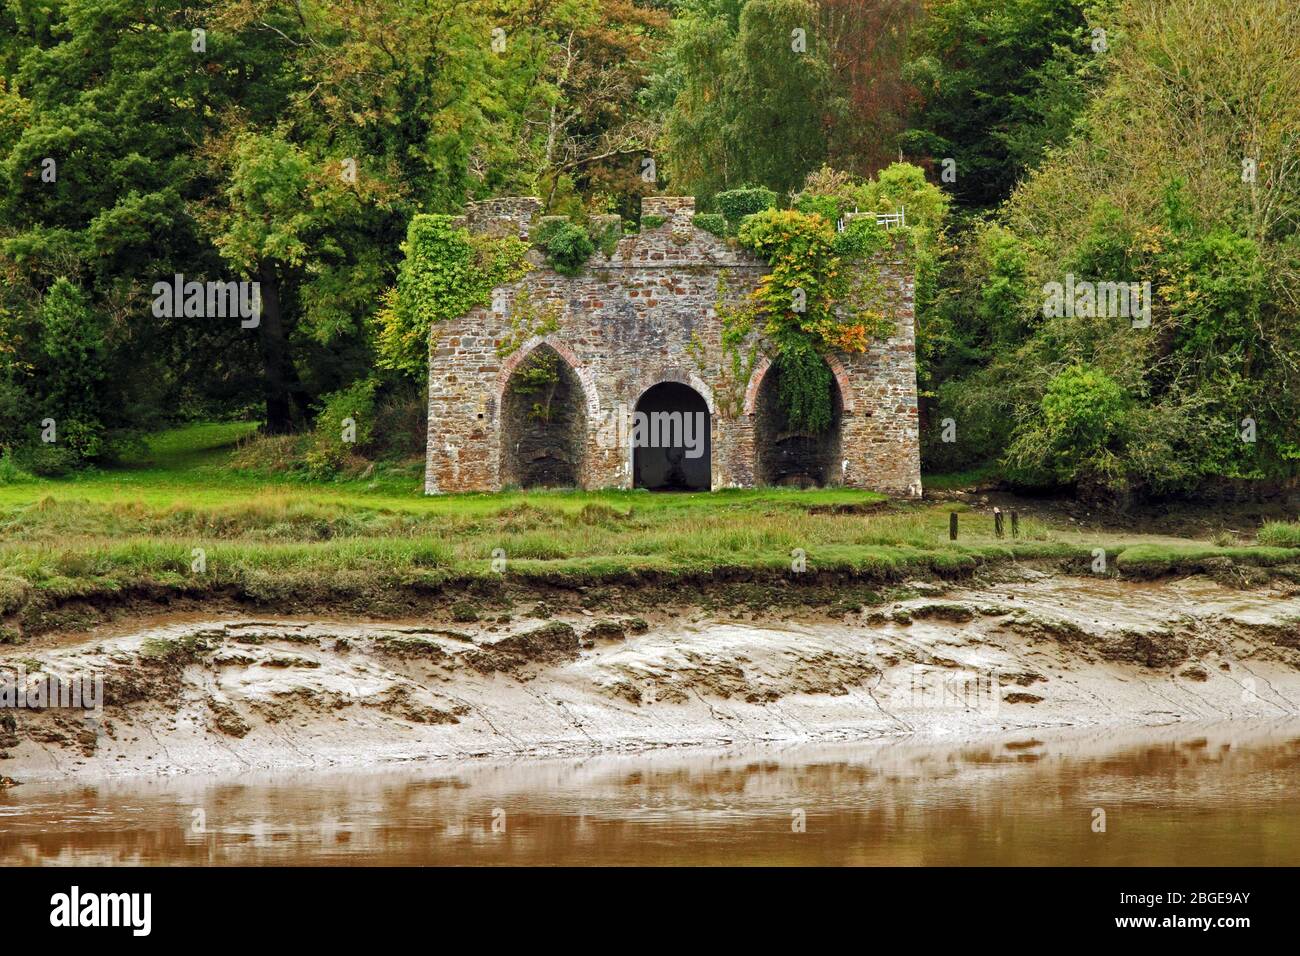 Old Lime Kiln sur la rivière Torridge près de Bideford, Devon, Angleterre. Banque D'Images